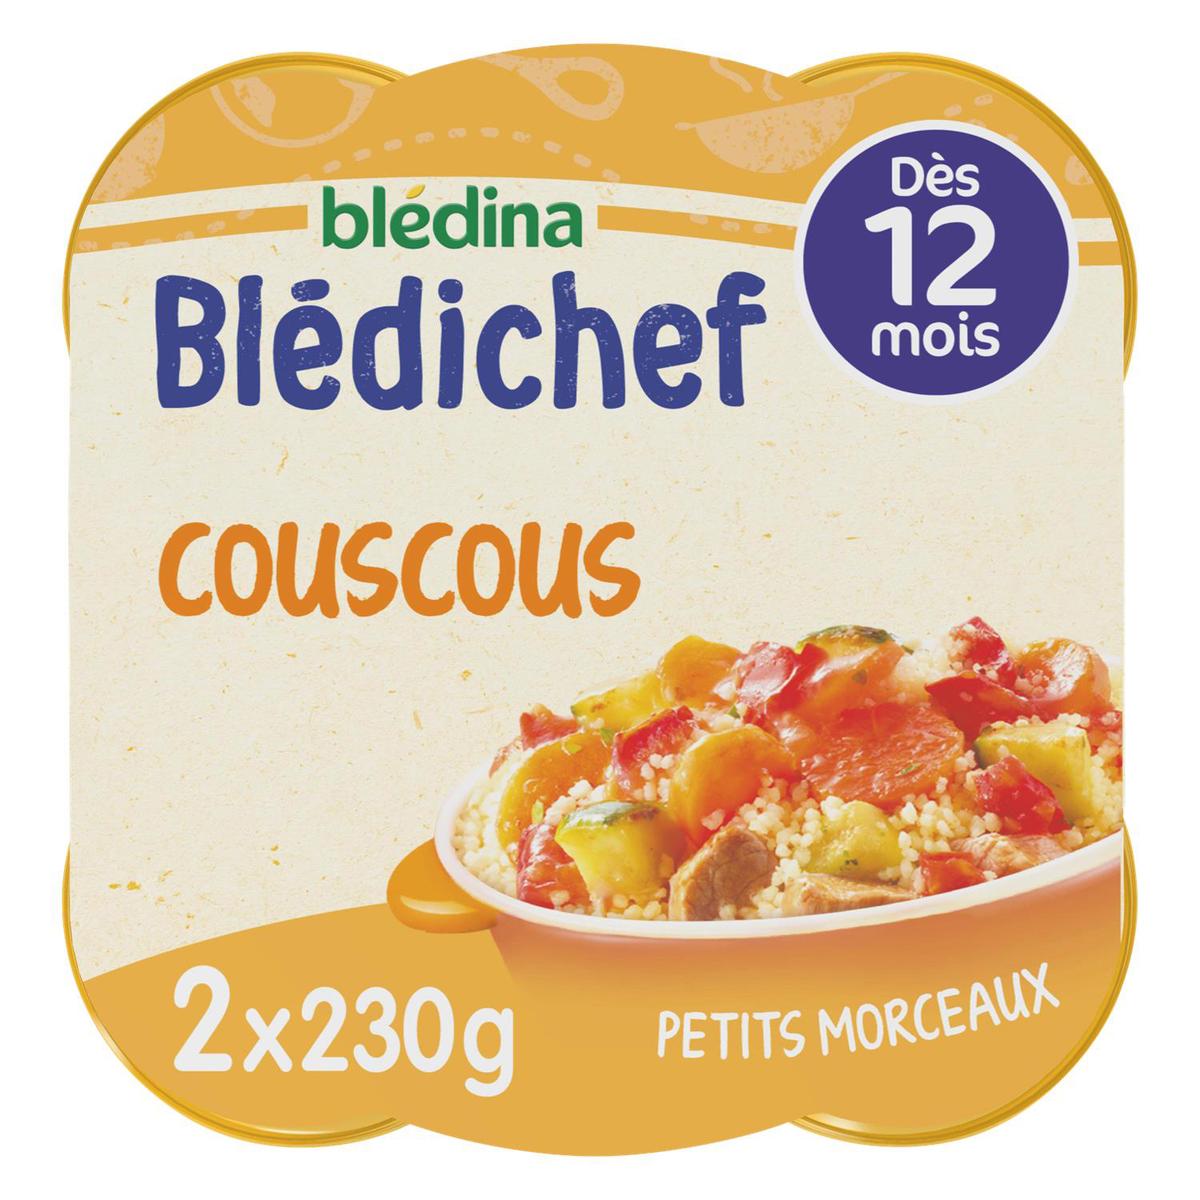 Blédina - Blédi'chef Couscous des Tout Petit Assiette Bébé Dès 12 mois